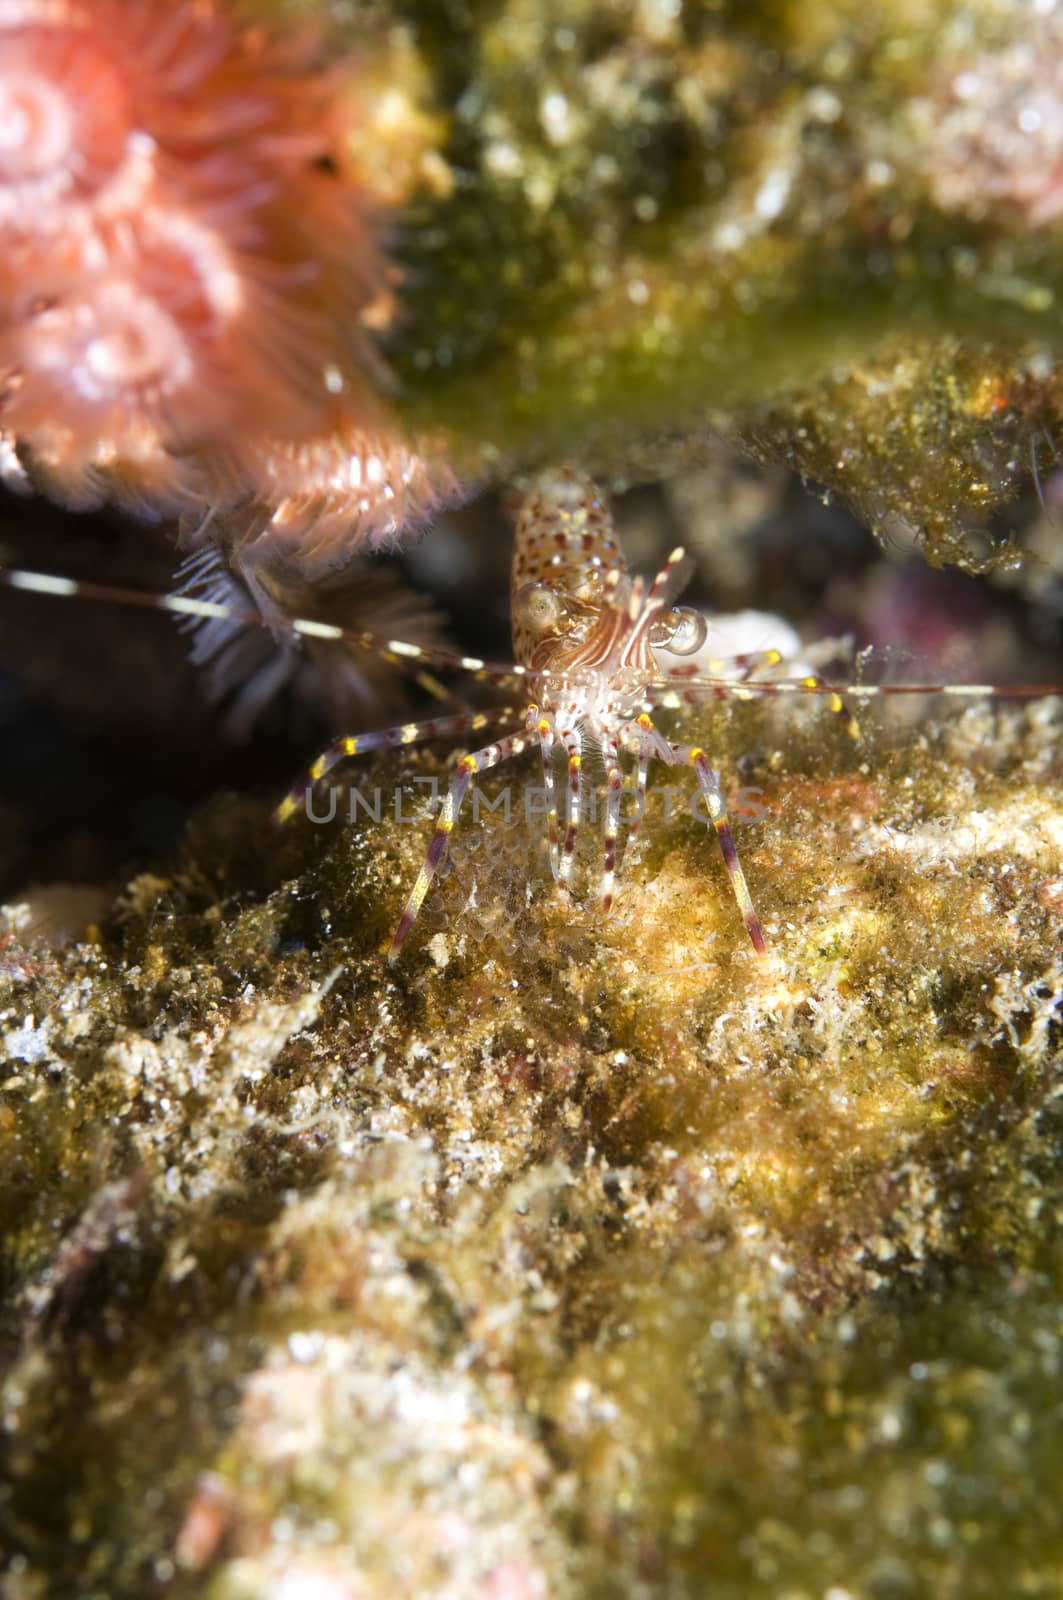 Coonstriped shrimp (Pandalus hypsinotus) by Njean